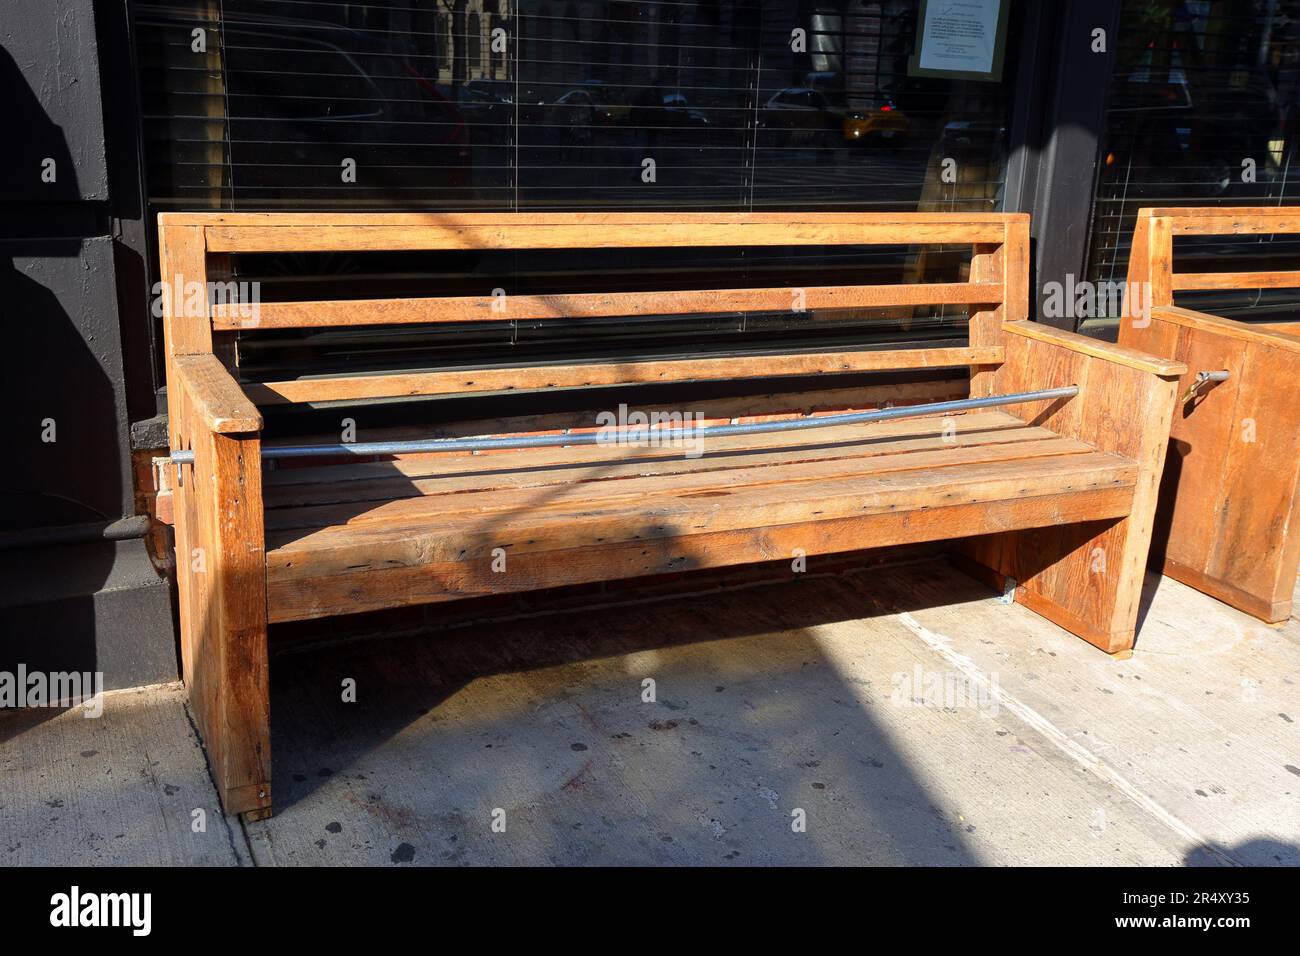 Ein elektrisches Metallrohr, das auf einer Bank platziert wird, um das Sitzen und Schlafen auf einer Holzbank außerhalb eines Restaurants zu verhindern. Feindliche Architektur Stockfoto